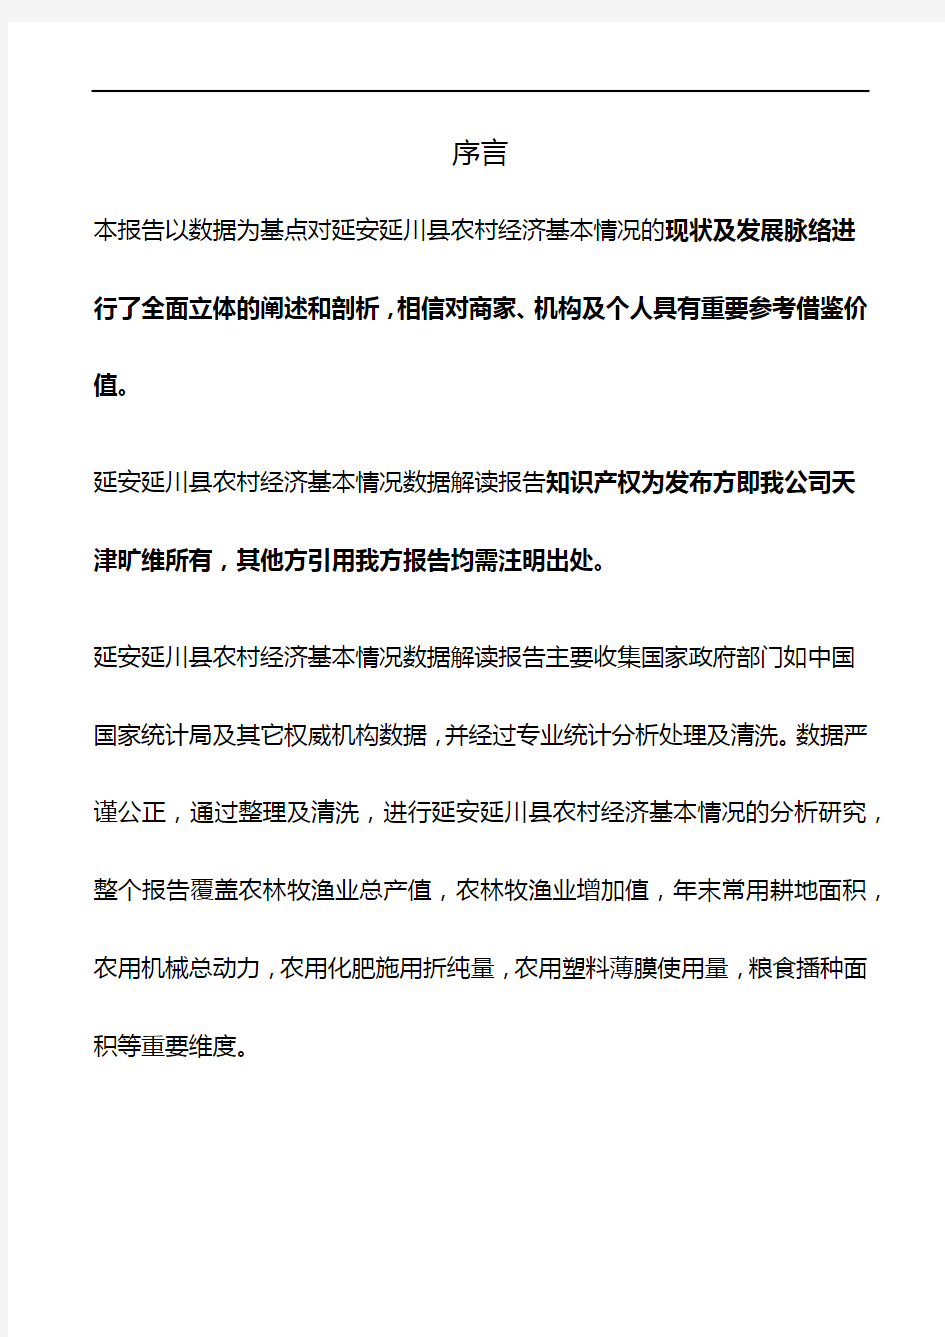 陕西省延安延川县农村经济基本情况3年数据解读报告2020版